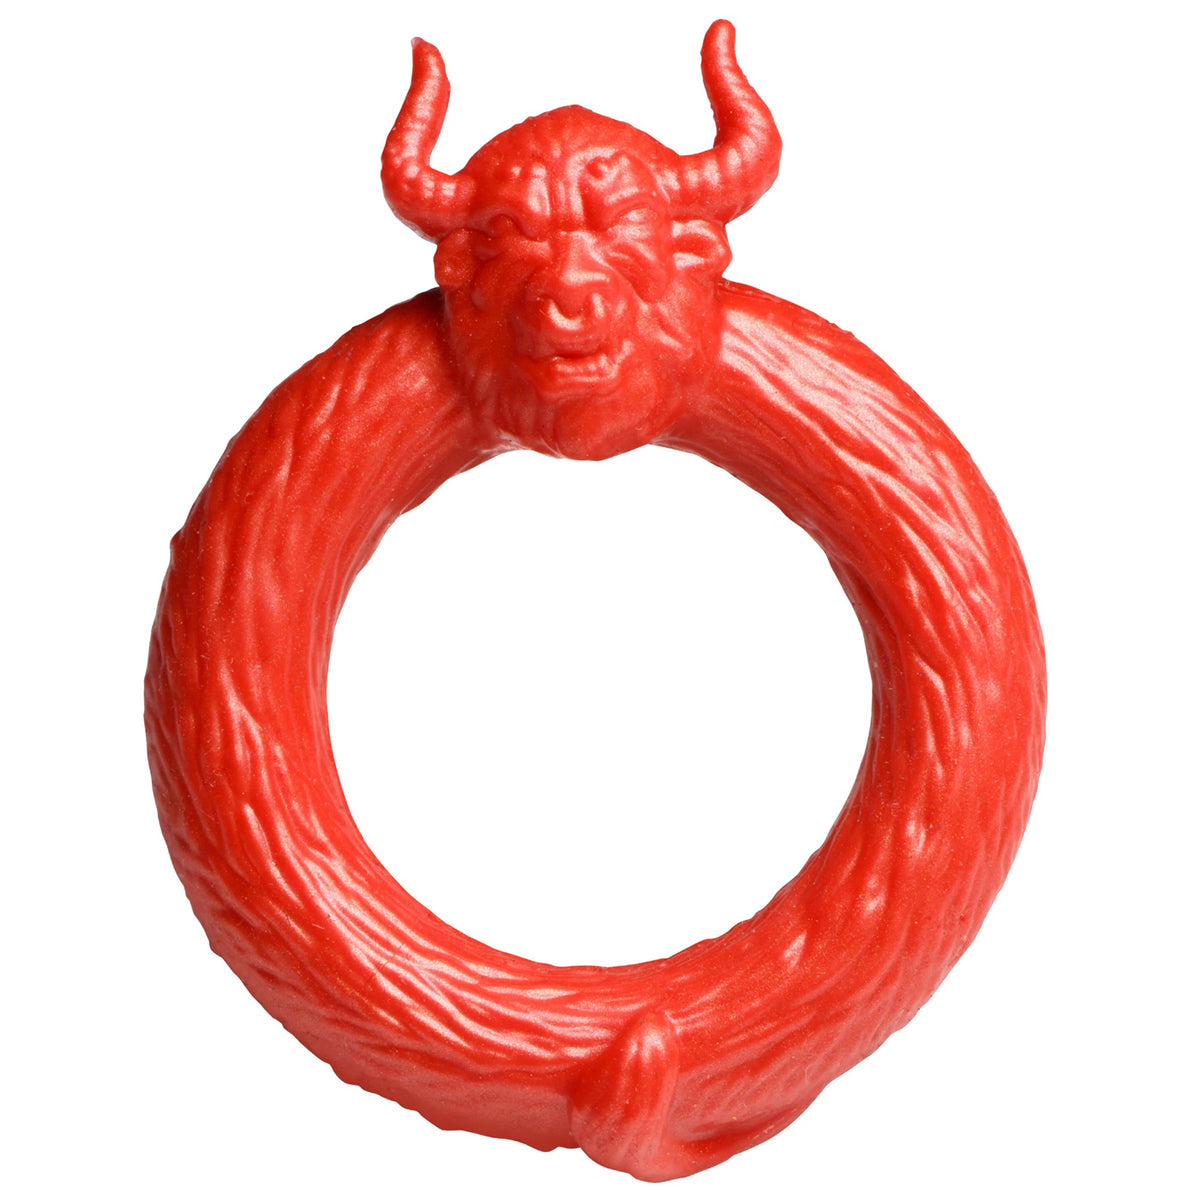 Anillo de silicona para el pene Beast Mode - Rojo